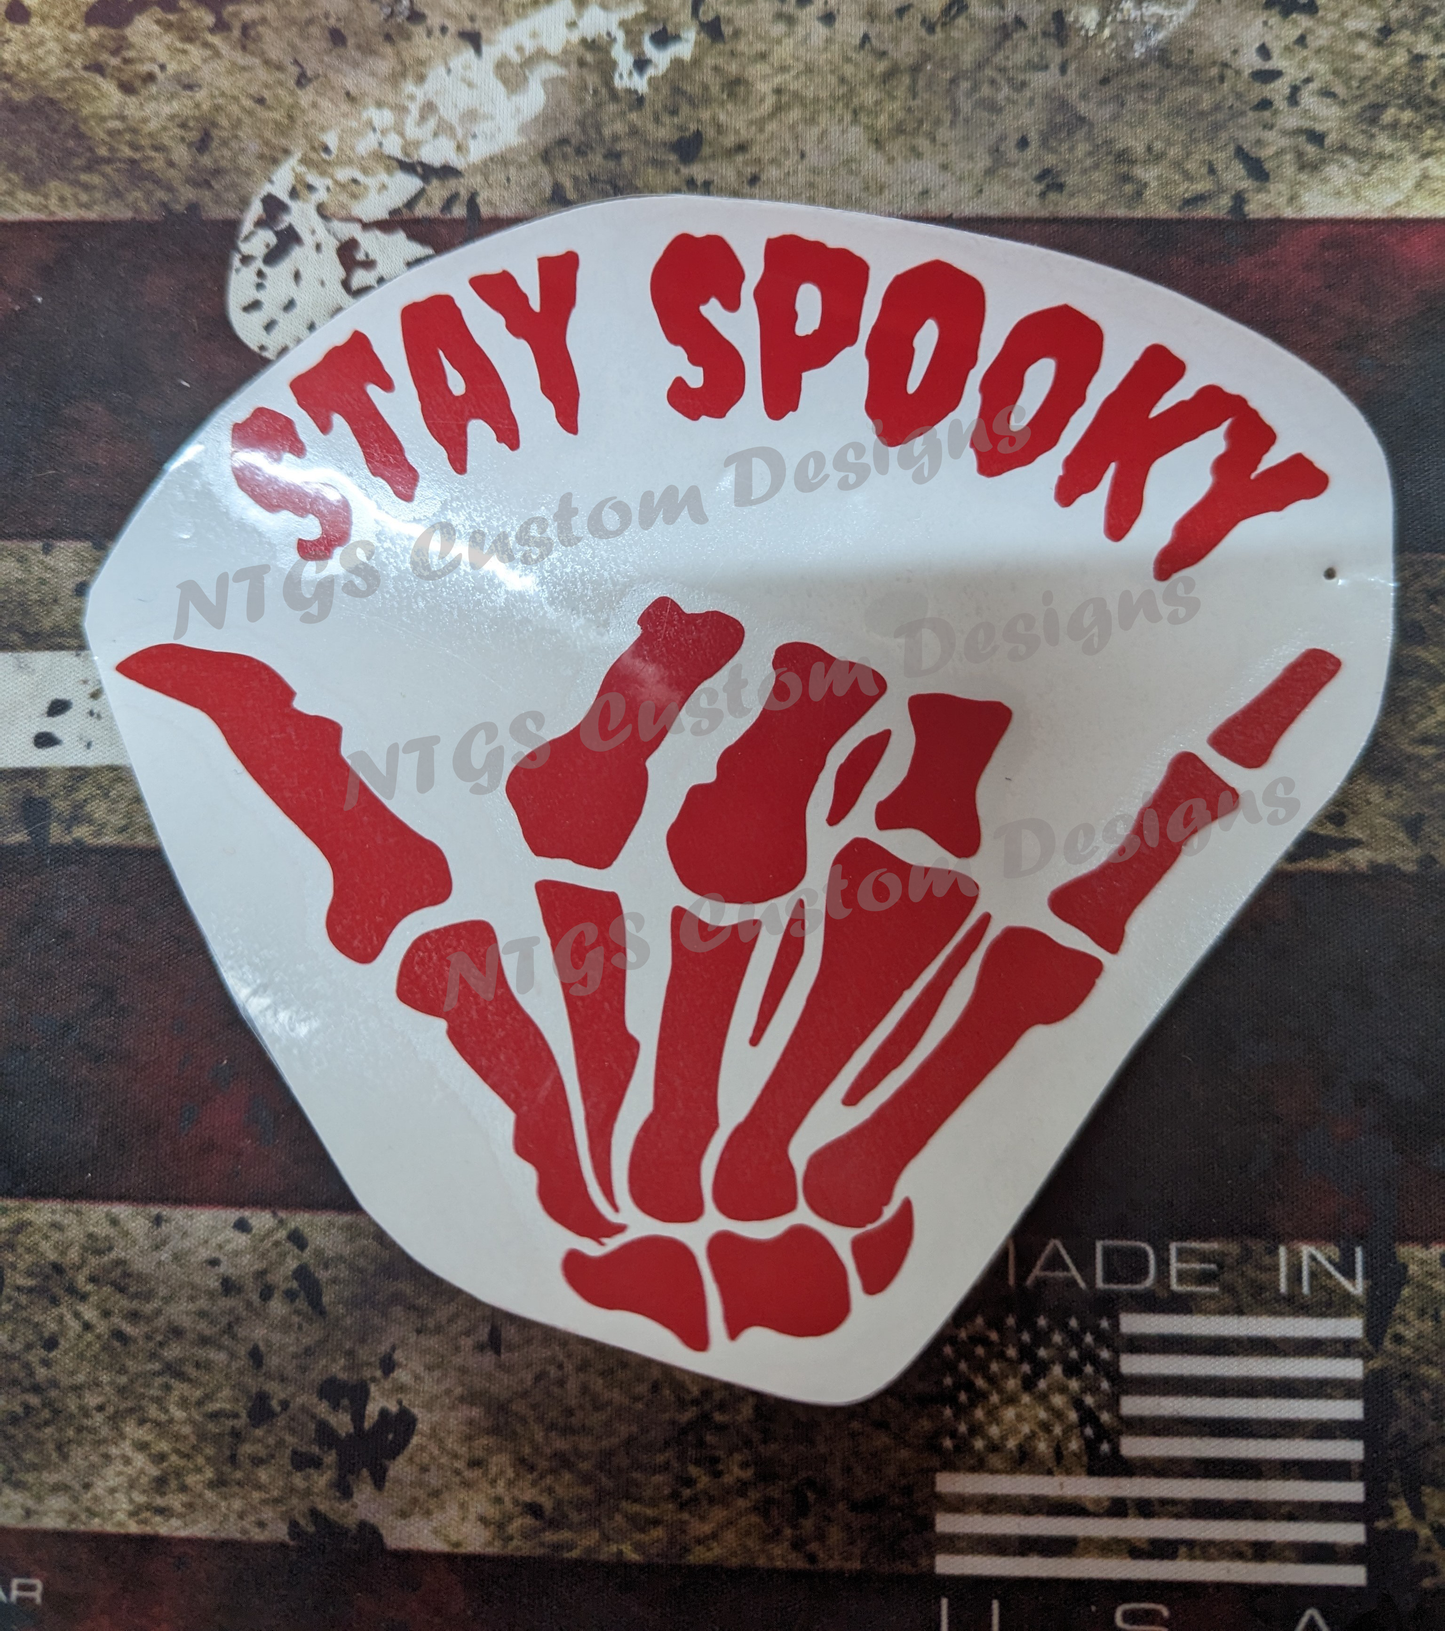 Stay Spooky!